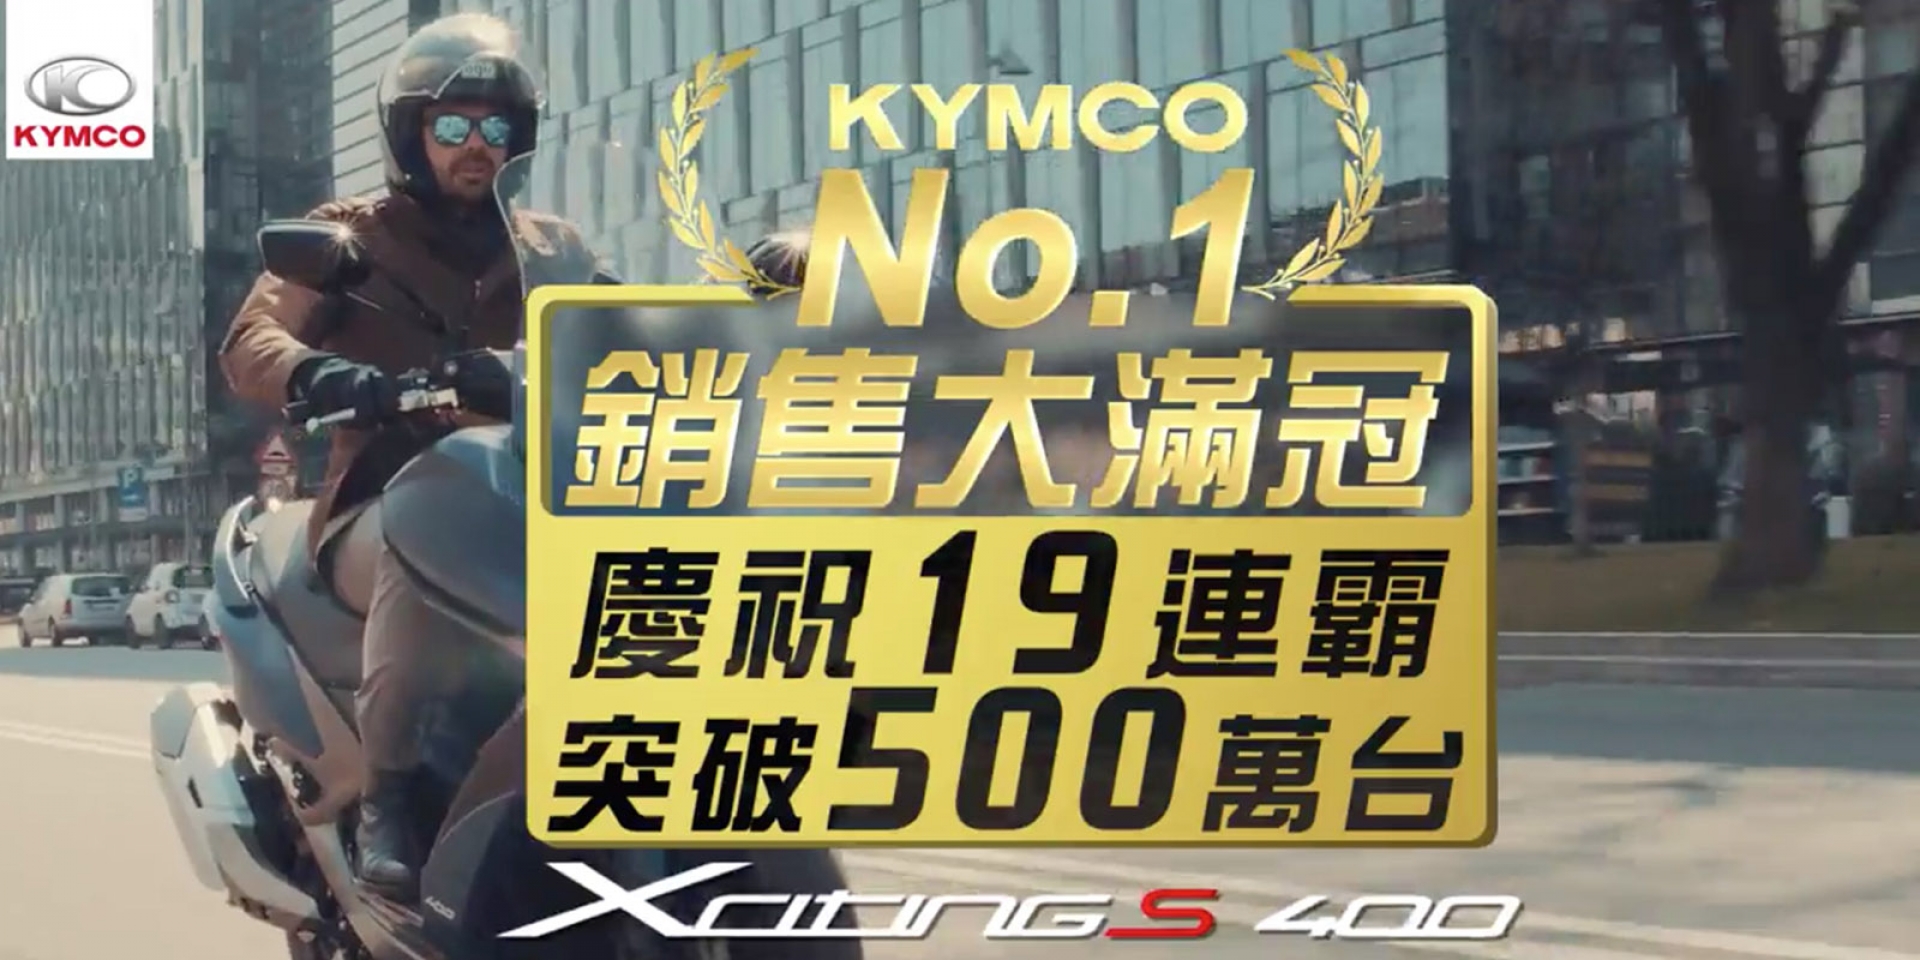 官方新聞稿。KYMCO No.1銷售大滿冠 慶祝19連霸突破500萬台